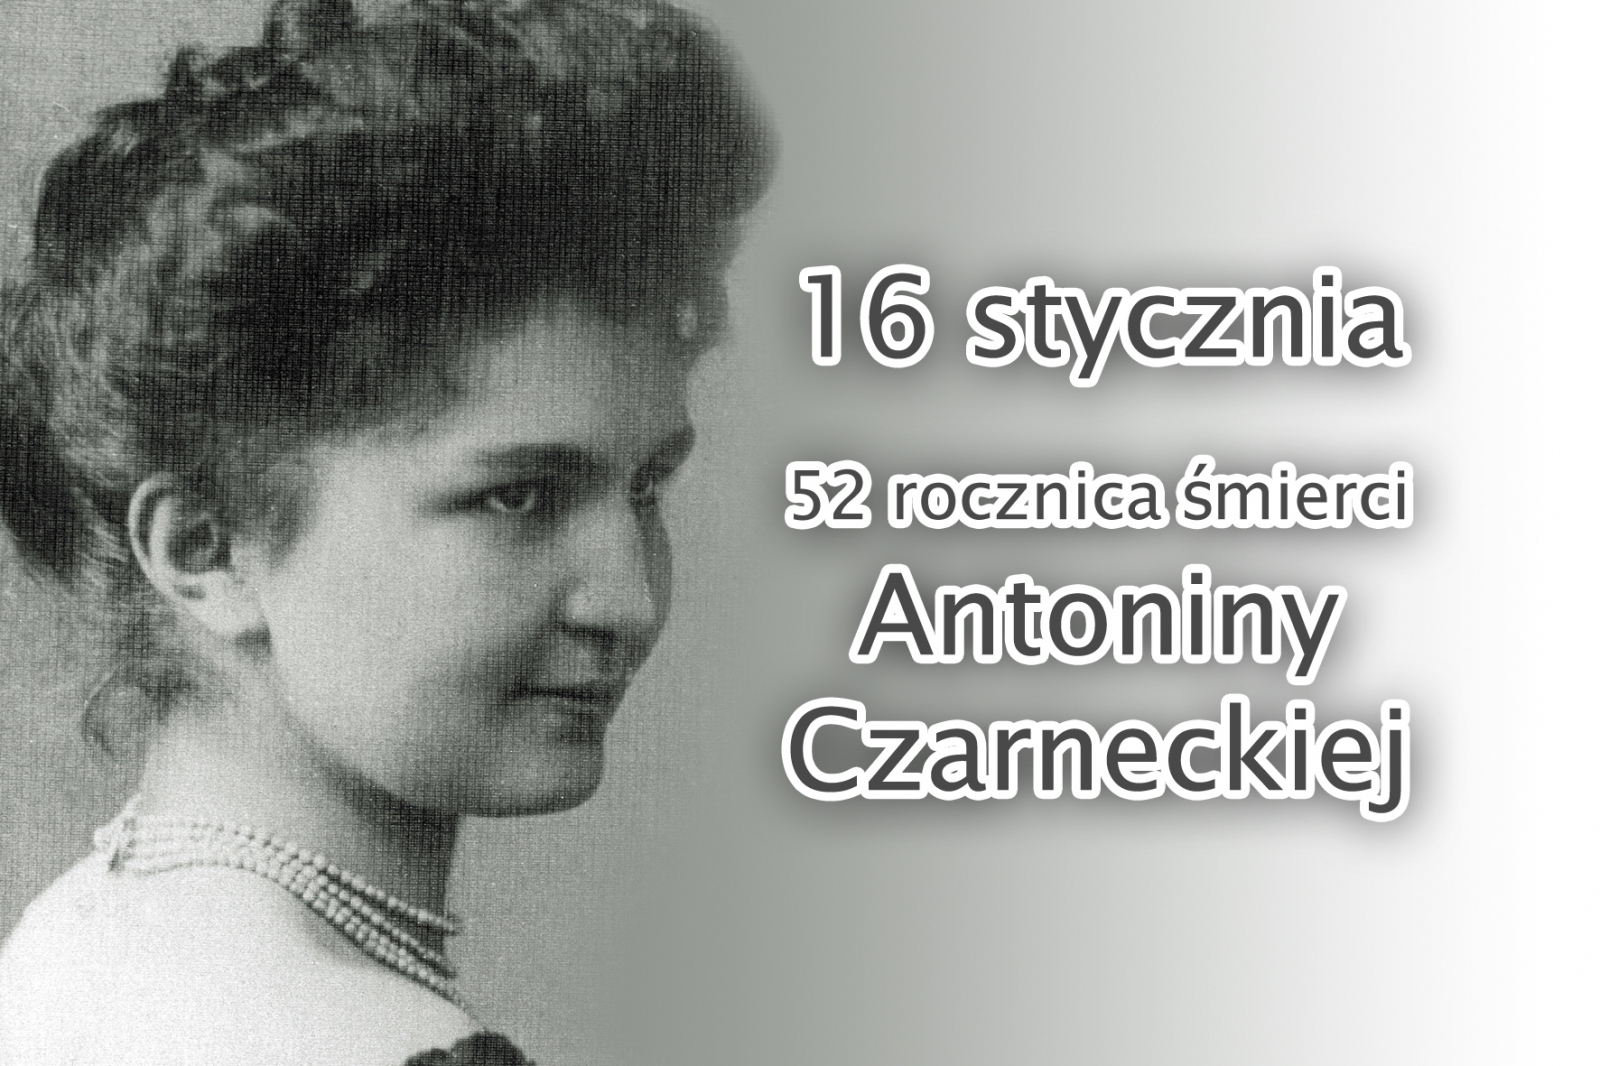 16 STYCZNIA - 52 ROCZNICA ŚMIERCI ANTONINY CZARNECKIEJ (1885-1967)